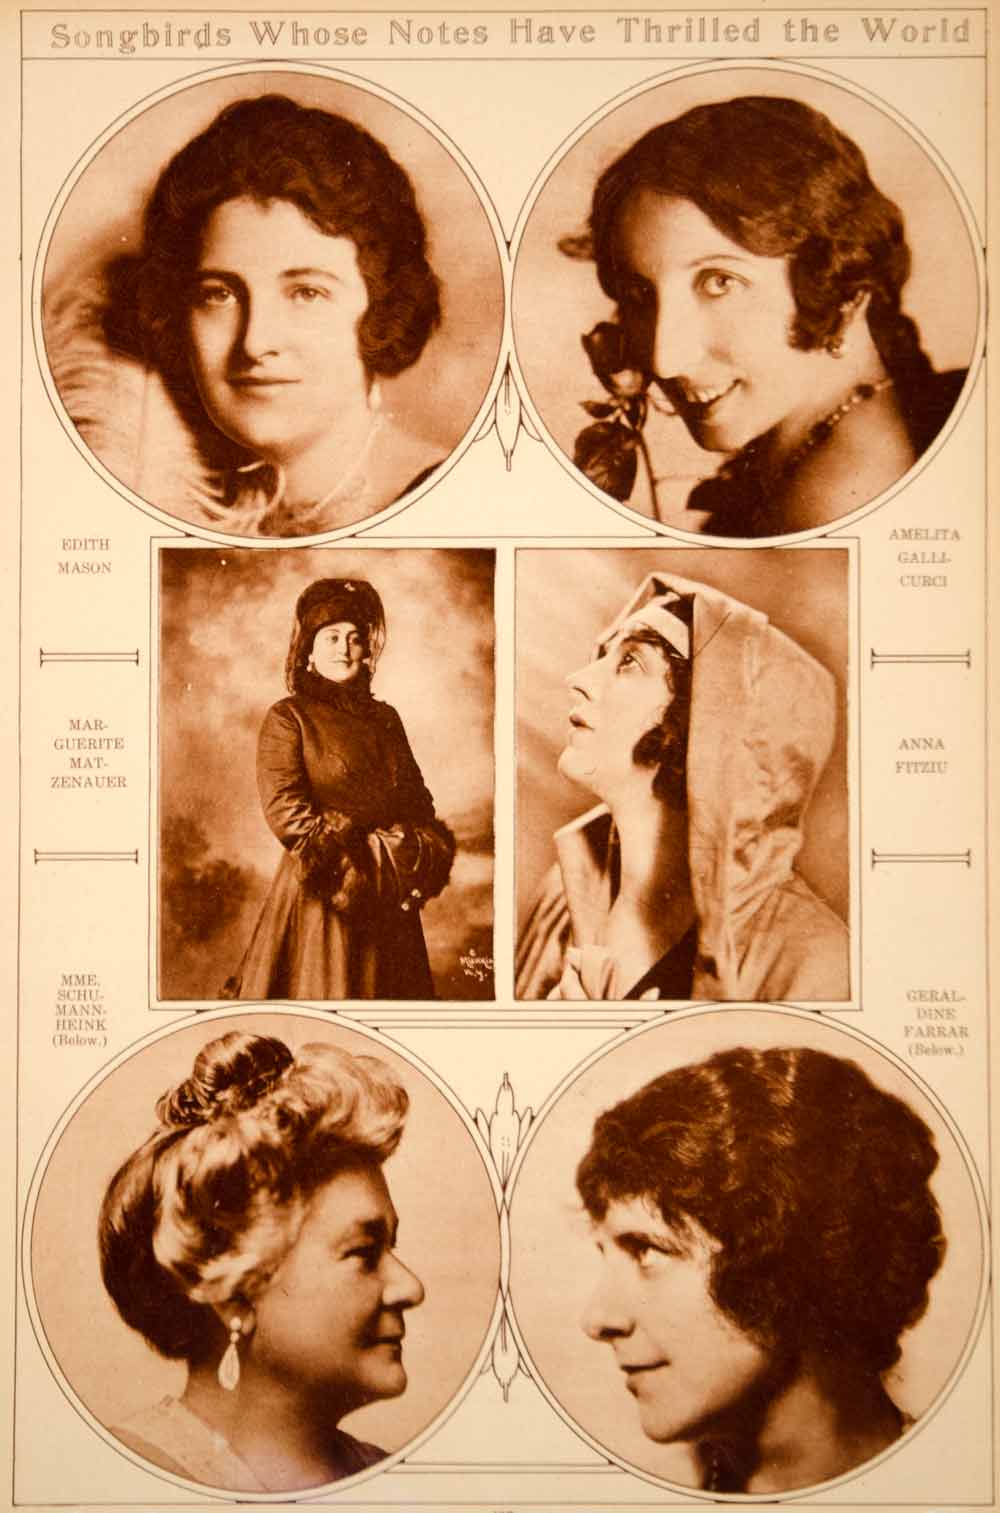 1923 Rotogravure Opera Singers Amelita Galli-Curci Schumann-Heink Anna Fitziu